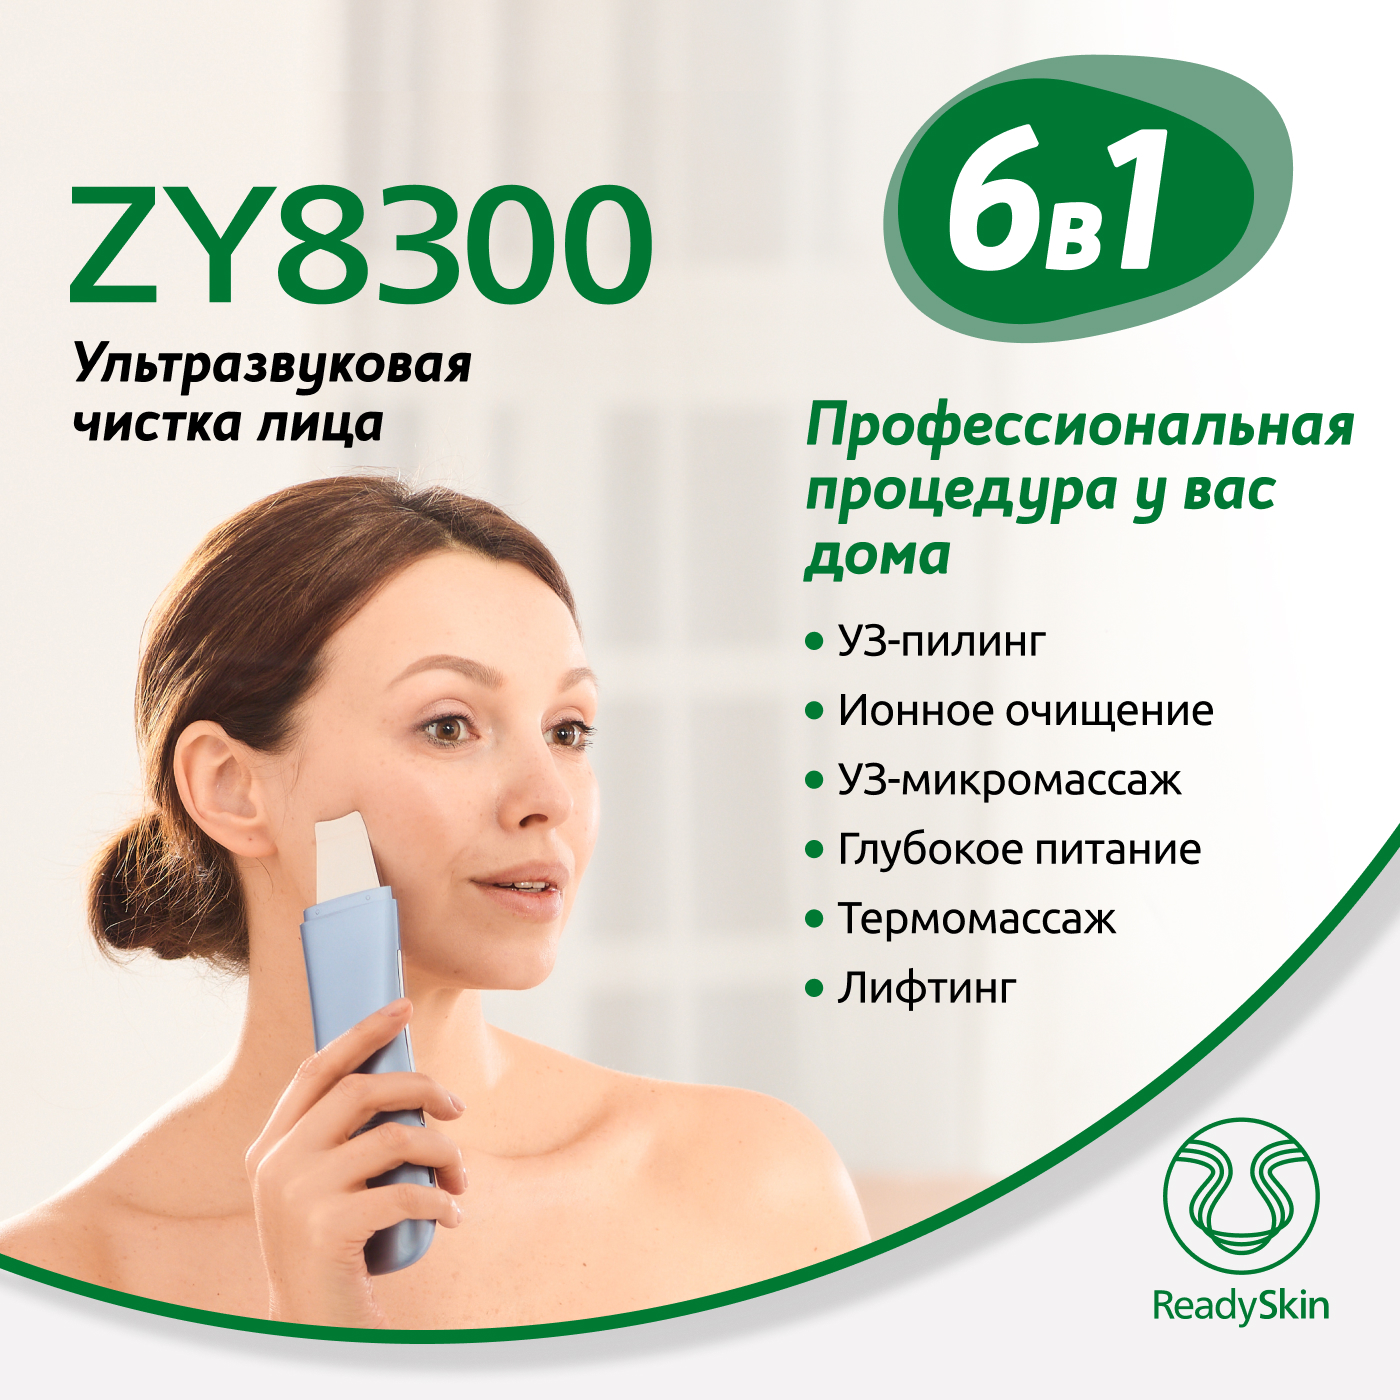 Аппарат ReadySkin ZY8300 для ультразвуковой чистки, ионофореза и термомассажа лица аппарат дарсонваль urm для лица и волос портативный 4 насадки